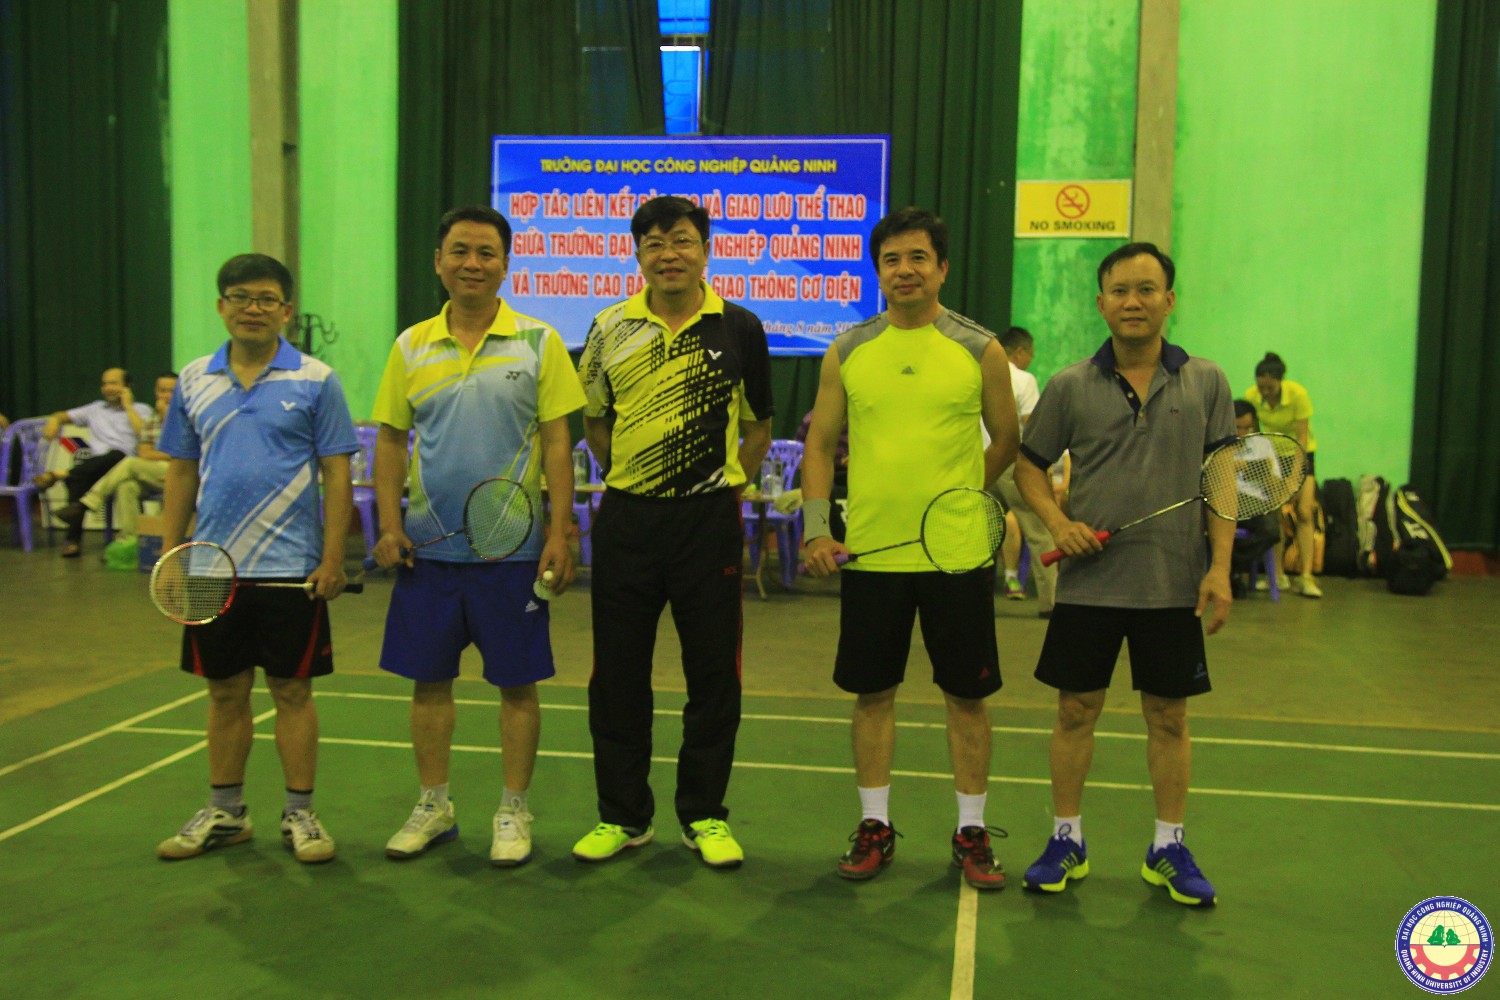 Hợp tác liên kết đào tạo và giao lưu thể thao giũa trường Đại học công nghiệp Quảng Ninh và trường cao đẳng Giao thông Cơ điện